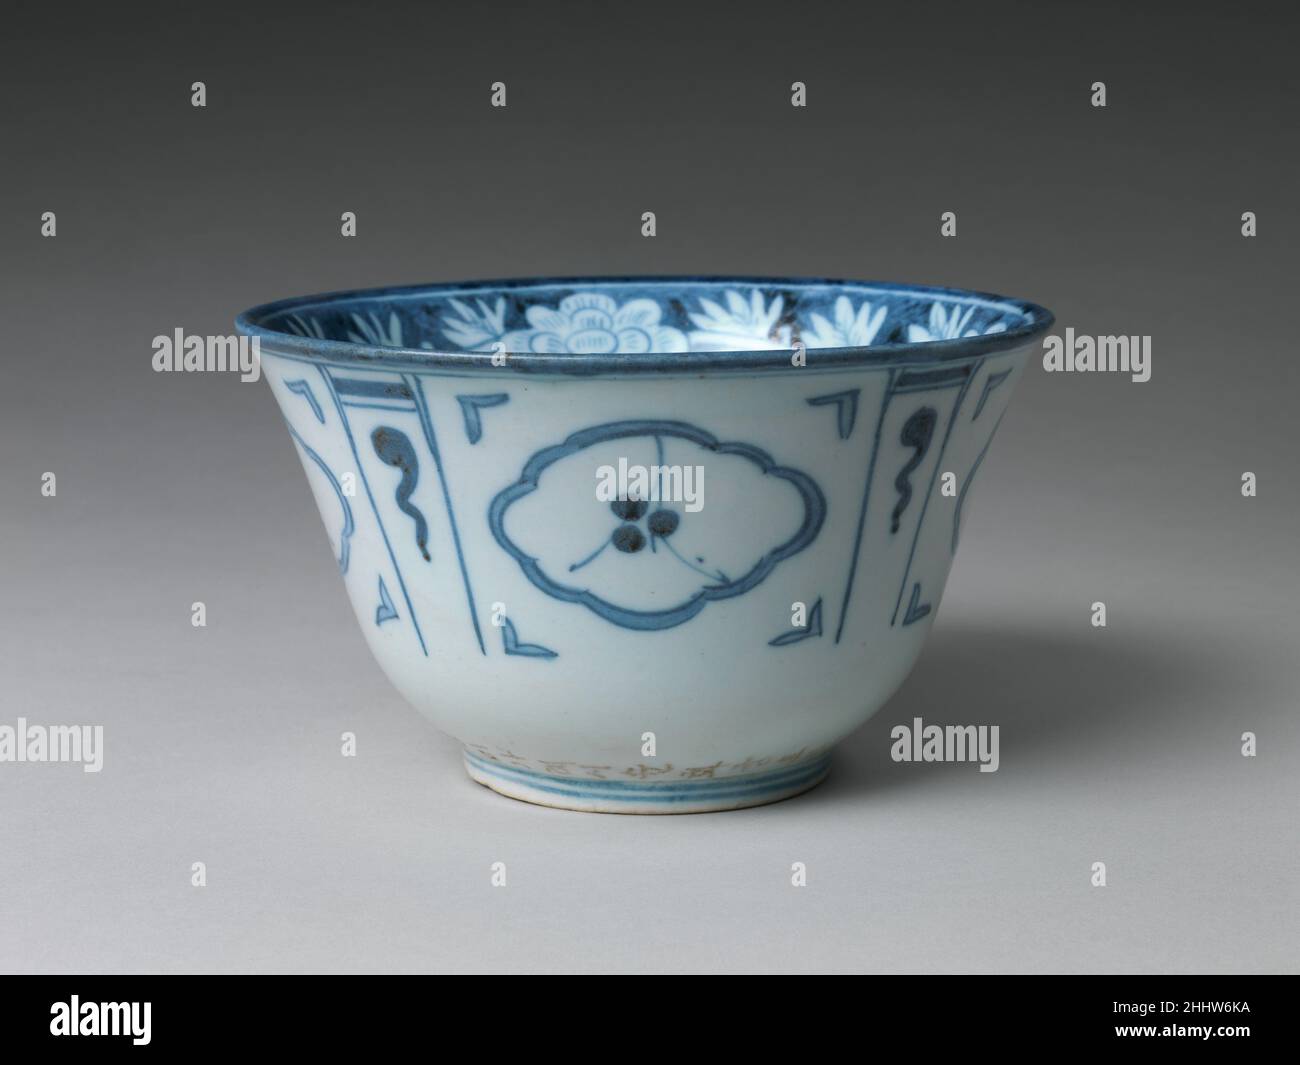 Schale mit floralem und abstraktem Dekor aus dem Jahr 1847 Korea die auffälligen, abstrakten Designs auf dieser Schale ähneln denen der sogenannten Kraak-Ware, dem chinesischen Export von blau-weißem Porzellan aus dem späten sechzehnten und frühen siebzehnten Jahrhundert. Der Stil ist in koreanischem Porzellan ungewöhnlich. Basierend auf der koreanischen Schriftzeichen (Hangeul) Inschrift über der Glasur über dem Fuß gebohrt, können wir vermuten, dass dies eine von dreißig Schalen für den Einsatz im Sunhwa Palace anlässlich der königlichen Hochzeit im Jahr 1847 von König Heonjong (r. 1834–49) an seine formell ausgewählte Konkubine. Schale mit Blumen und abstrakt Stockfoto